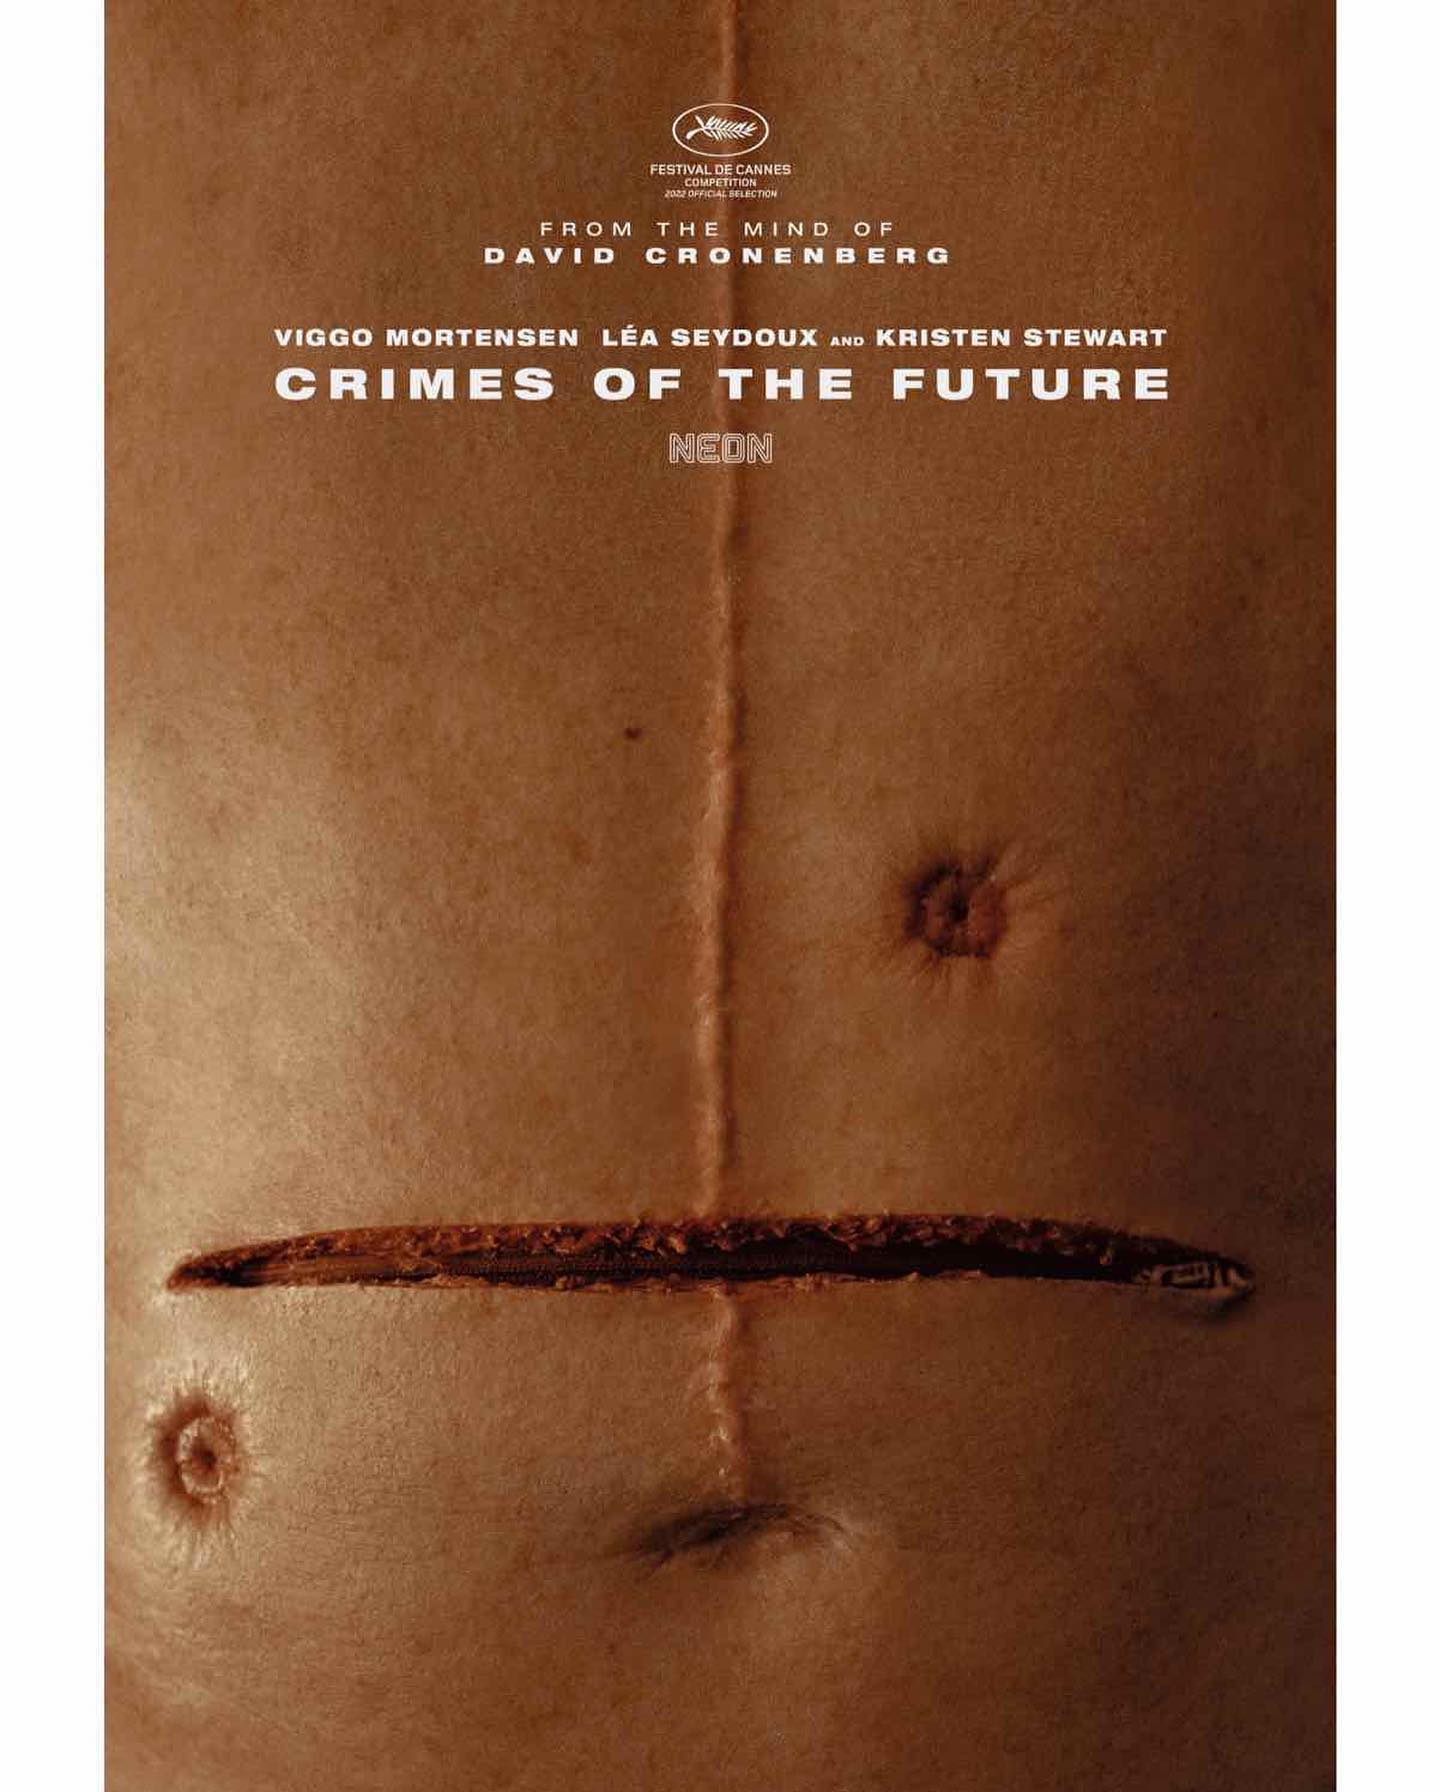 [NEWS] Il trailer di Crimes of the Future di David Cronenberg